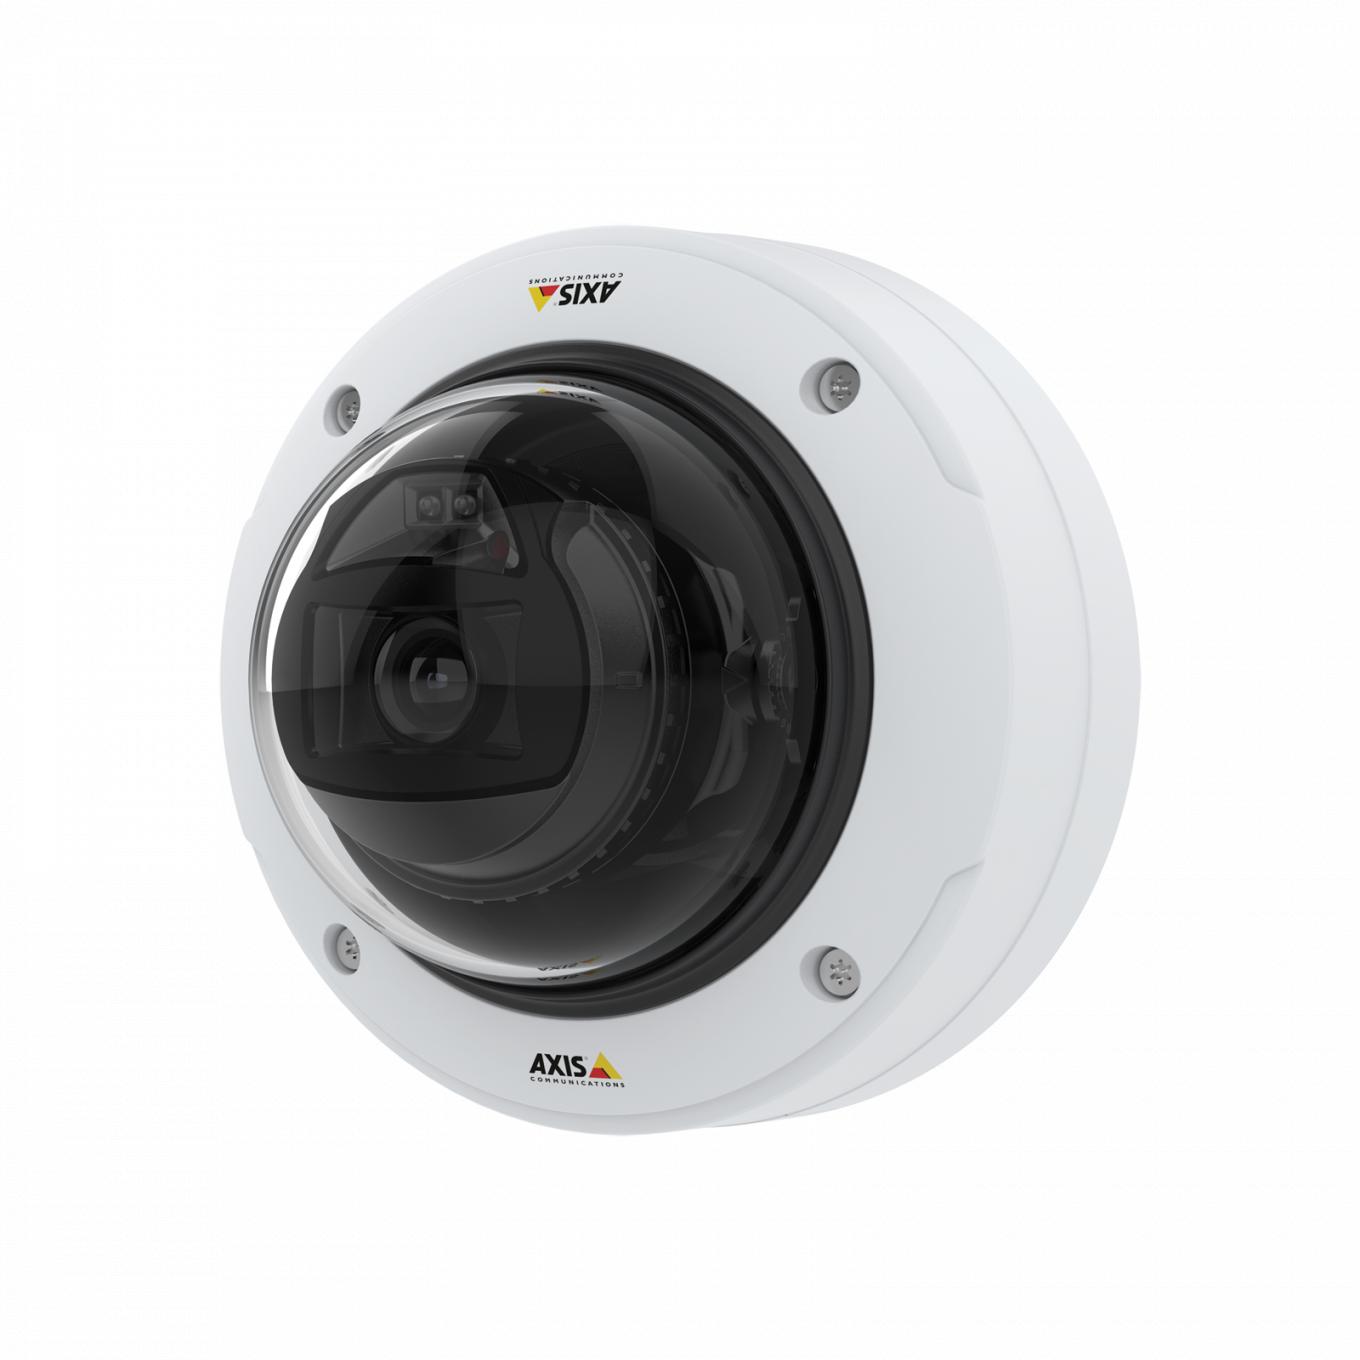 Купольная камера AXIS P3255-LVE Dome Camera, вид спереди